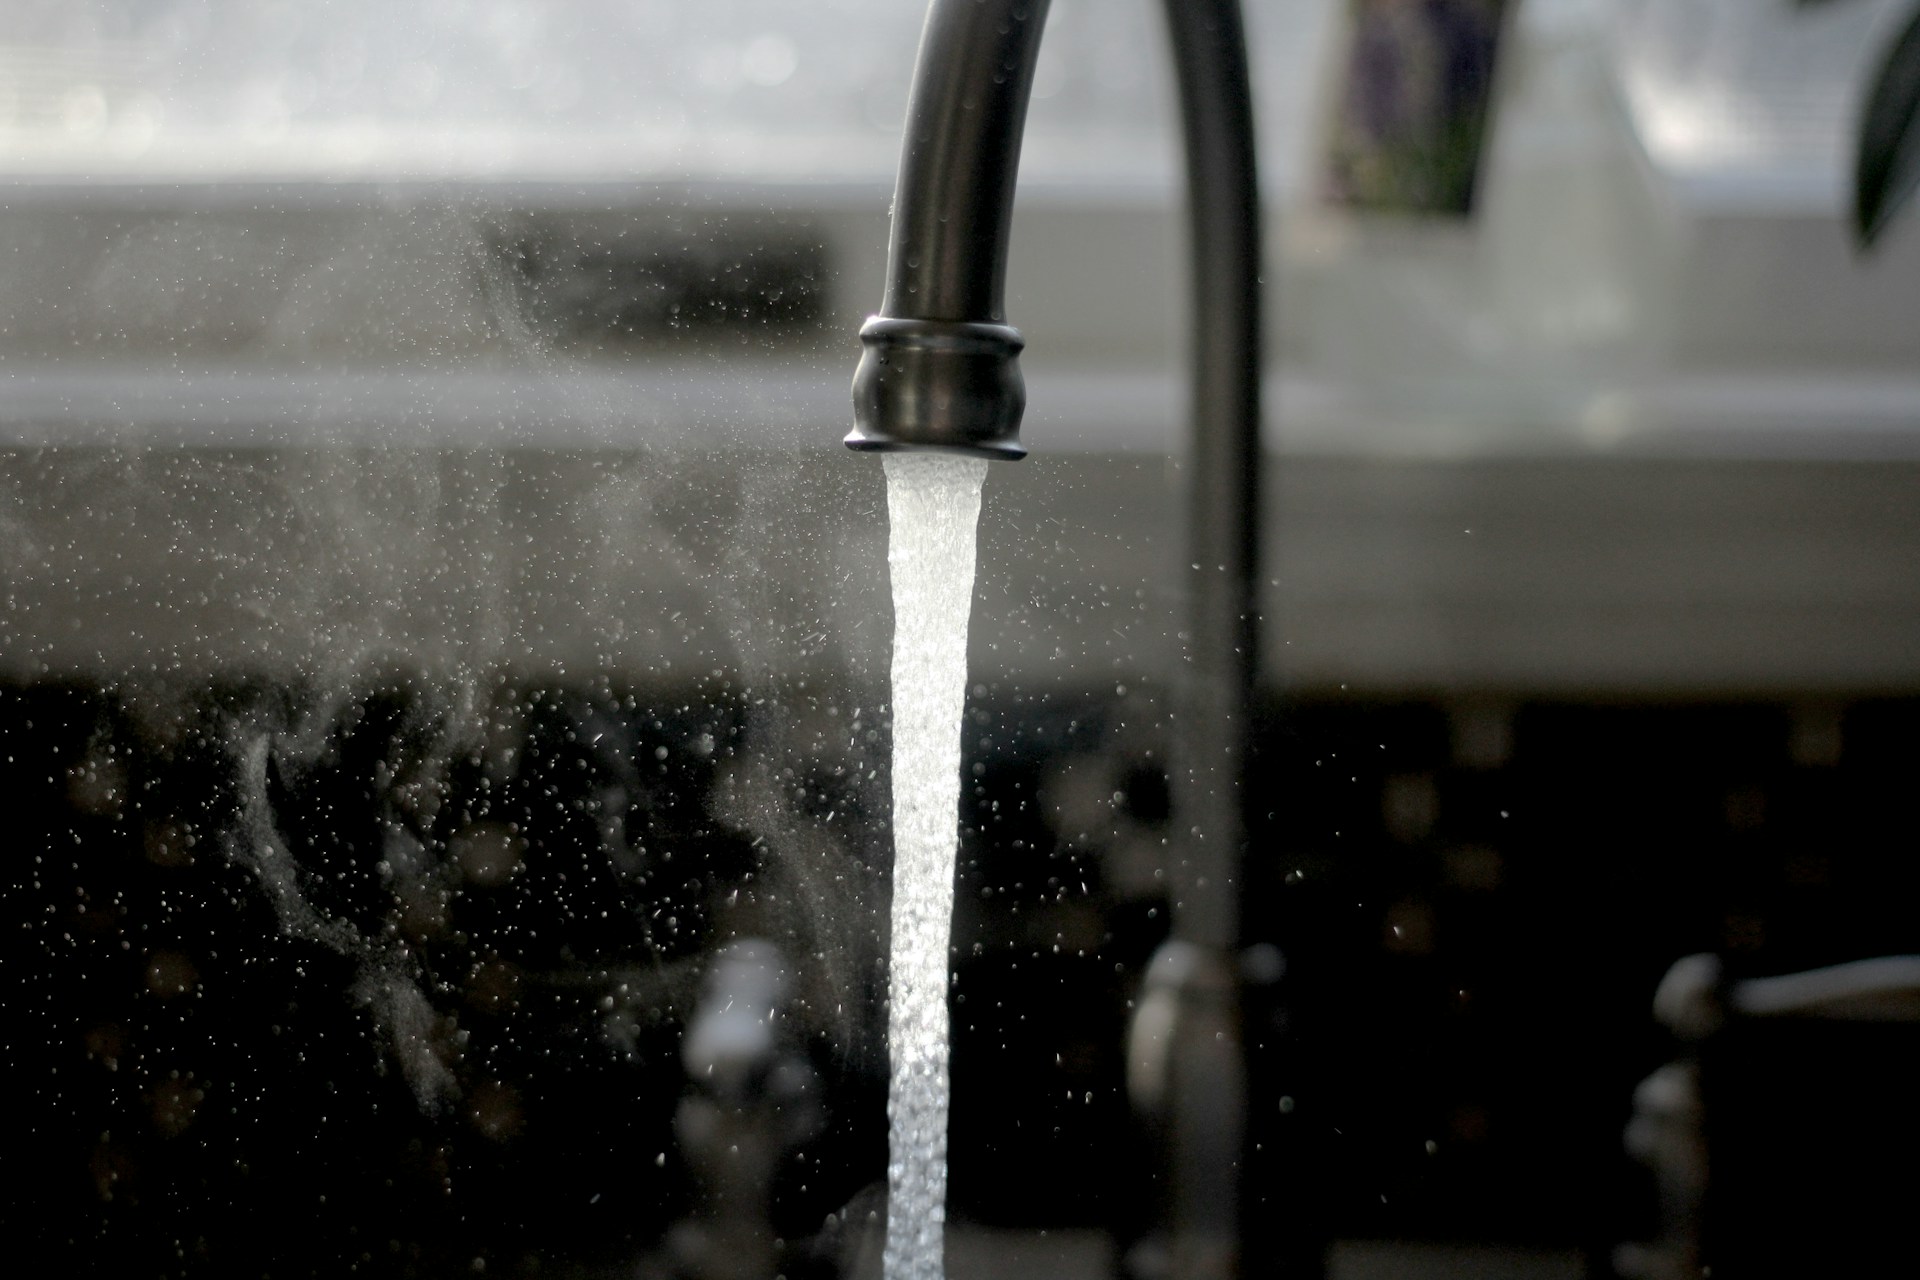 A faucet running hot water after de-winterizing a home